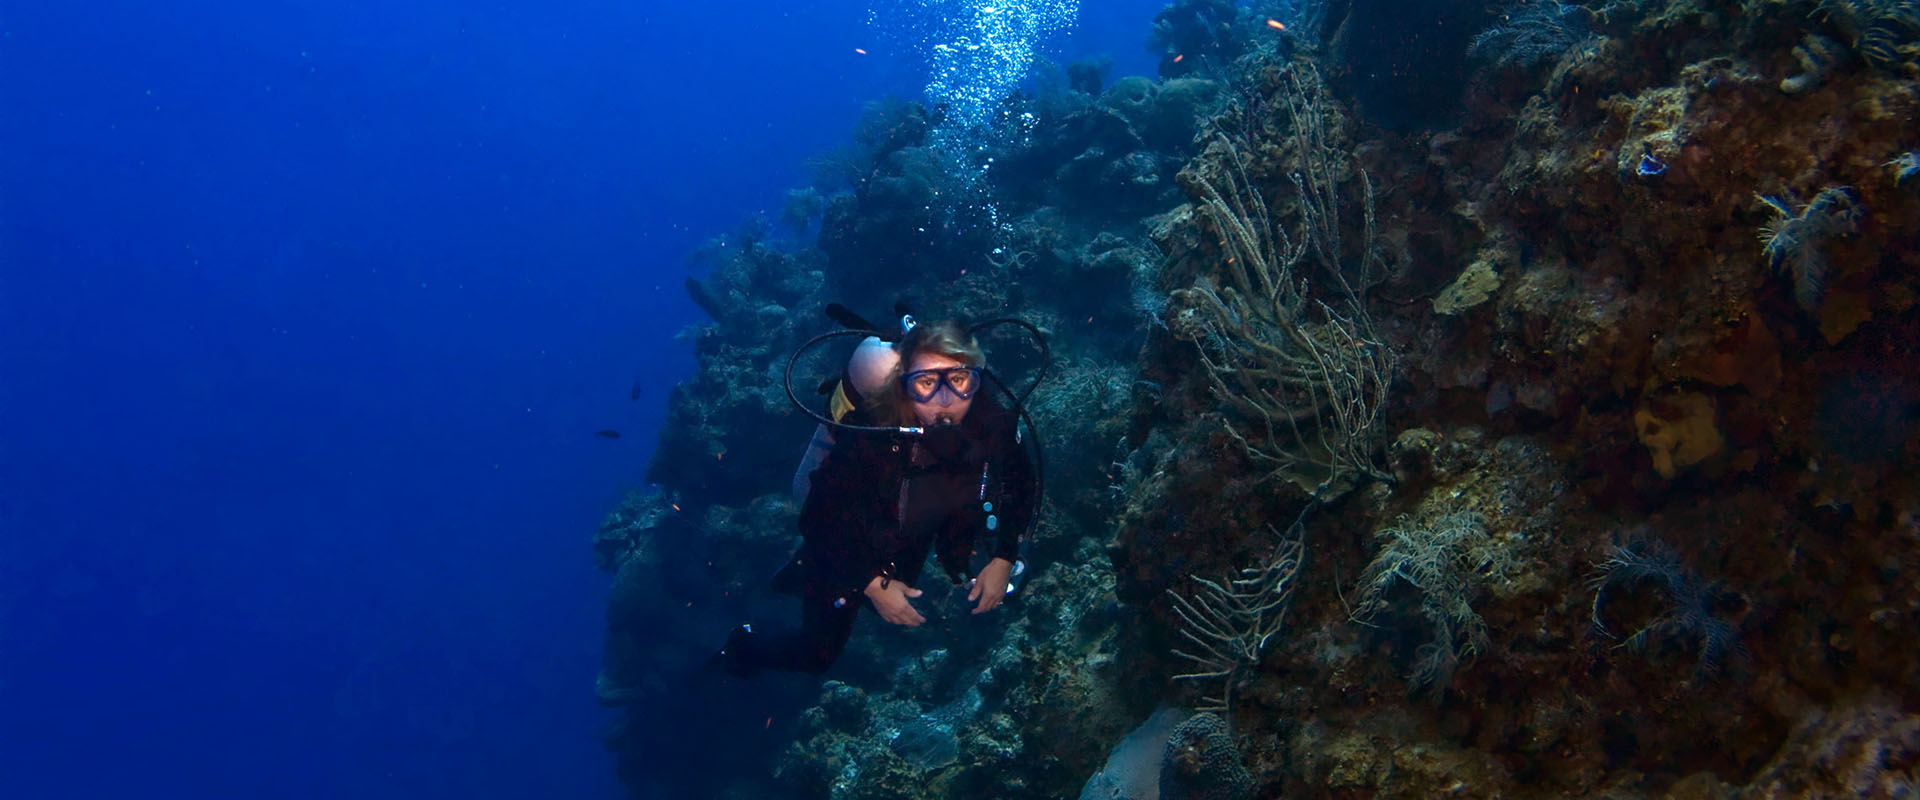 Cayman Brac Liveaboard Diving